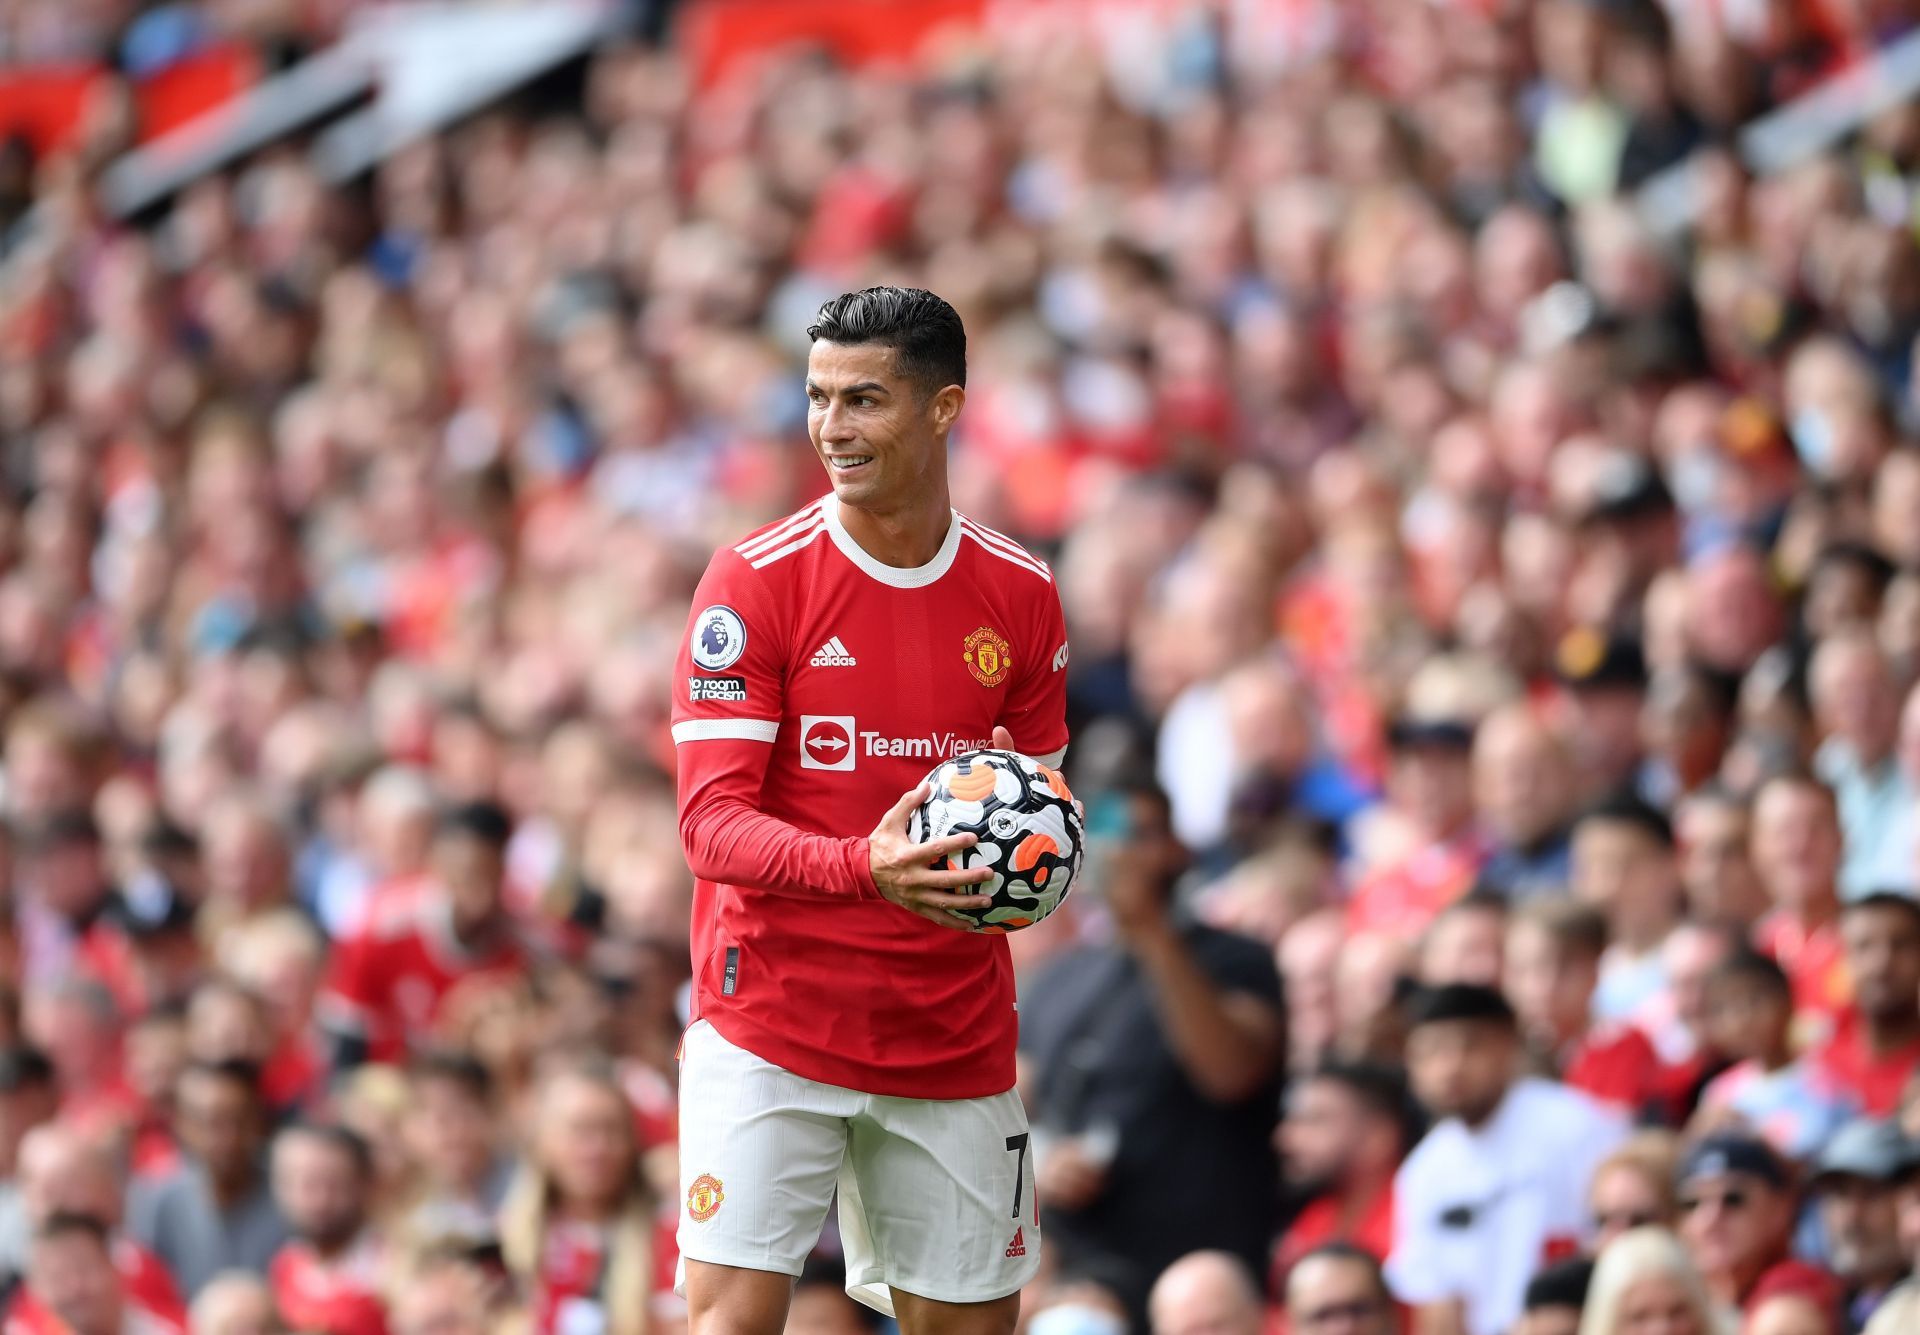 Manchester United attacker - Cristiano Ronaldo